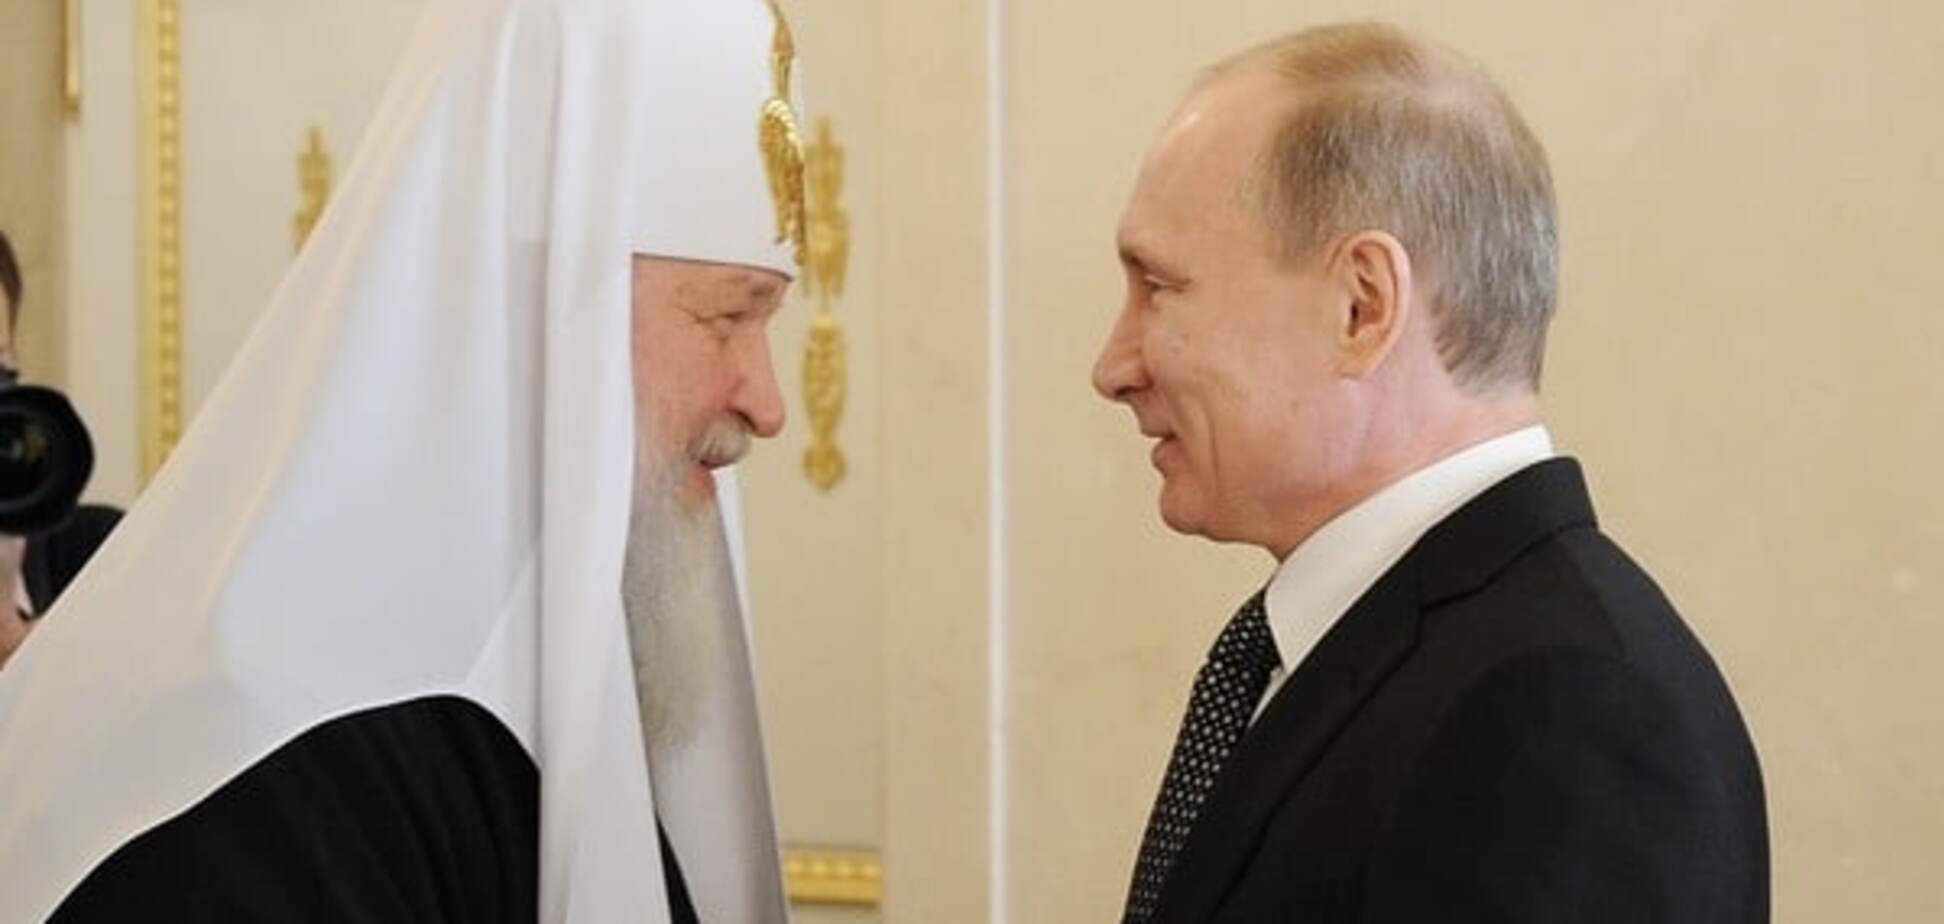 Встреча с Папой: Портников пояснил, как расходятся амбиции Путина и патриарха Кирилла